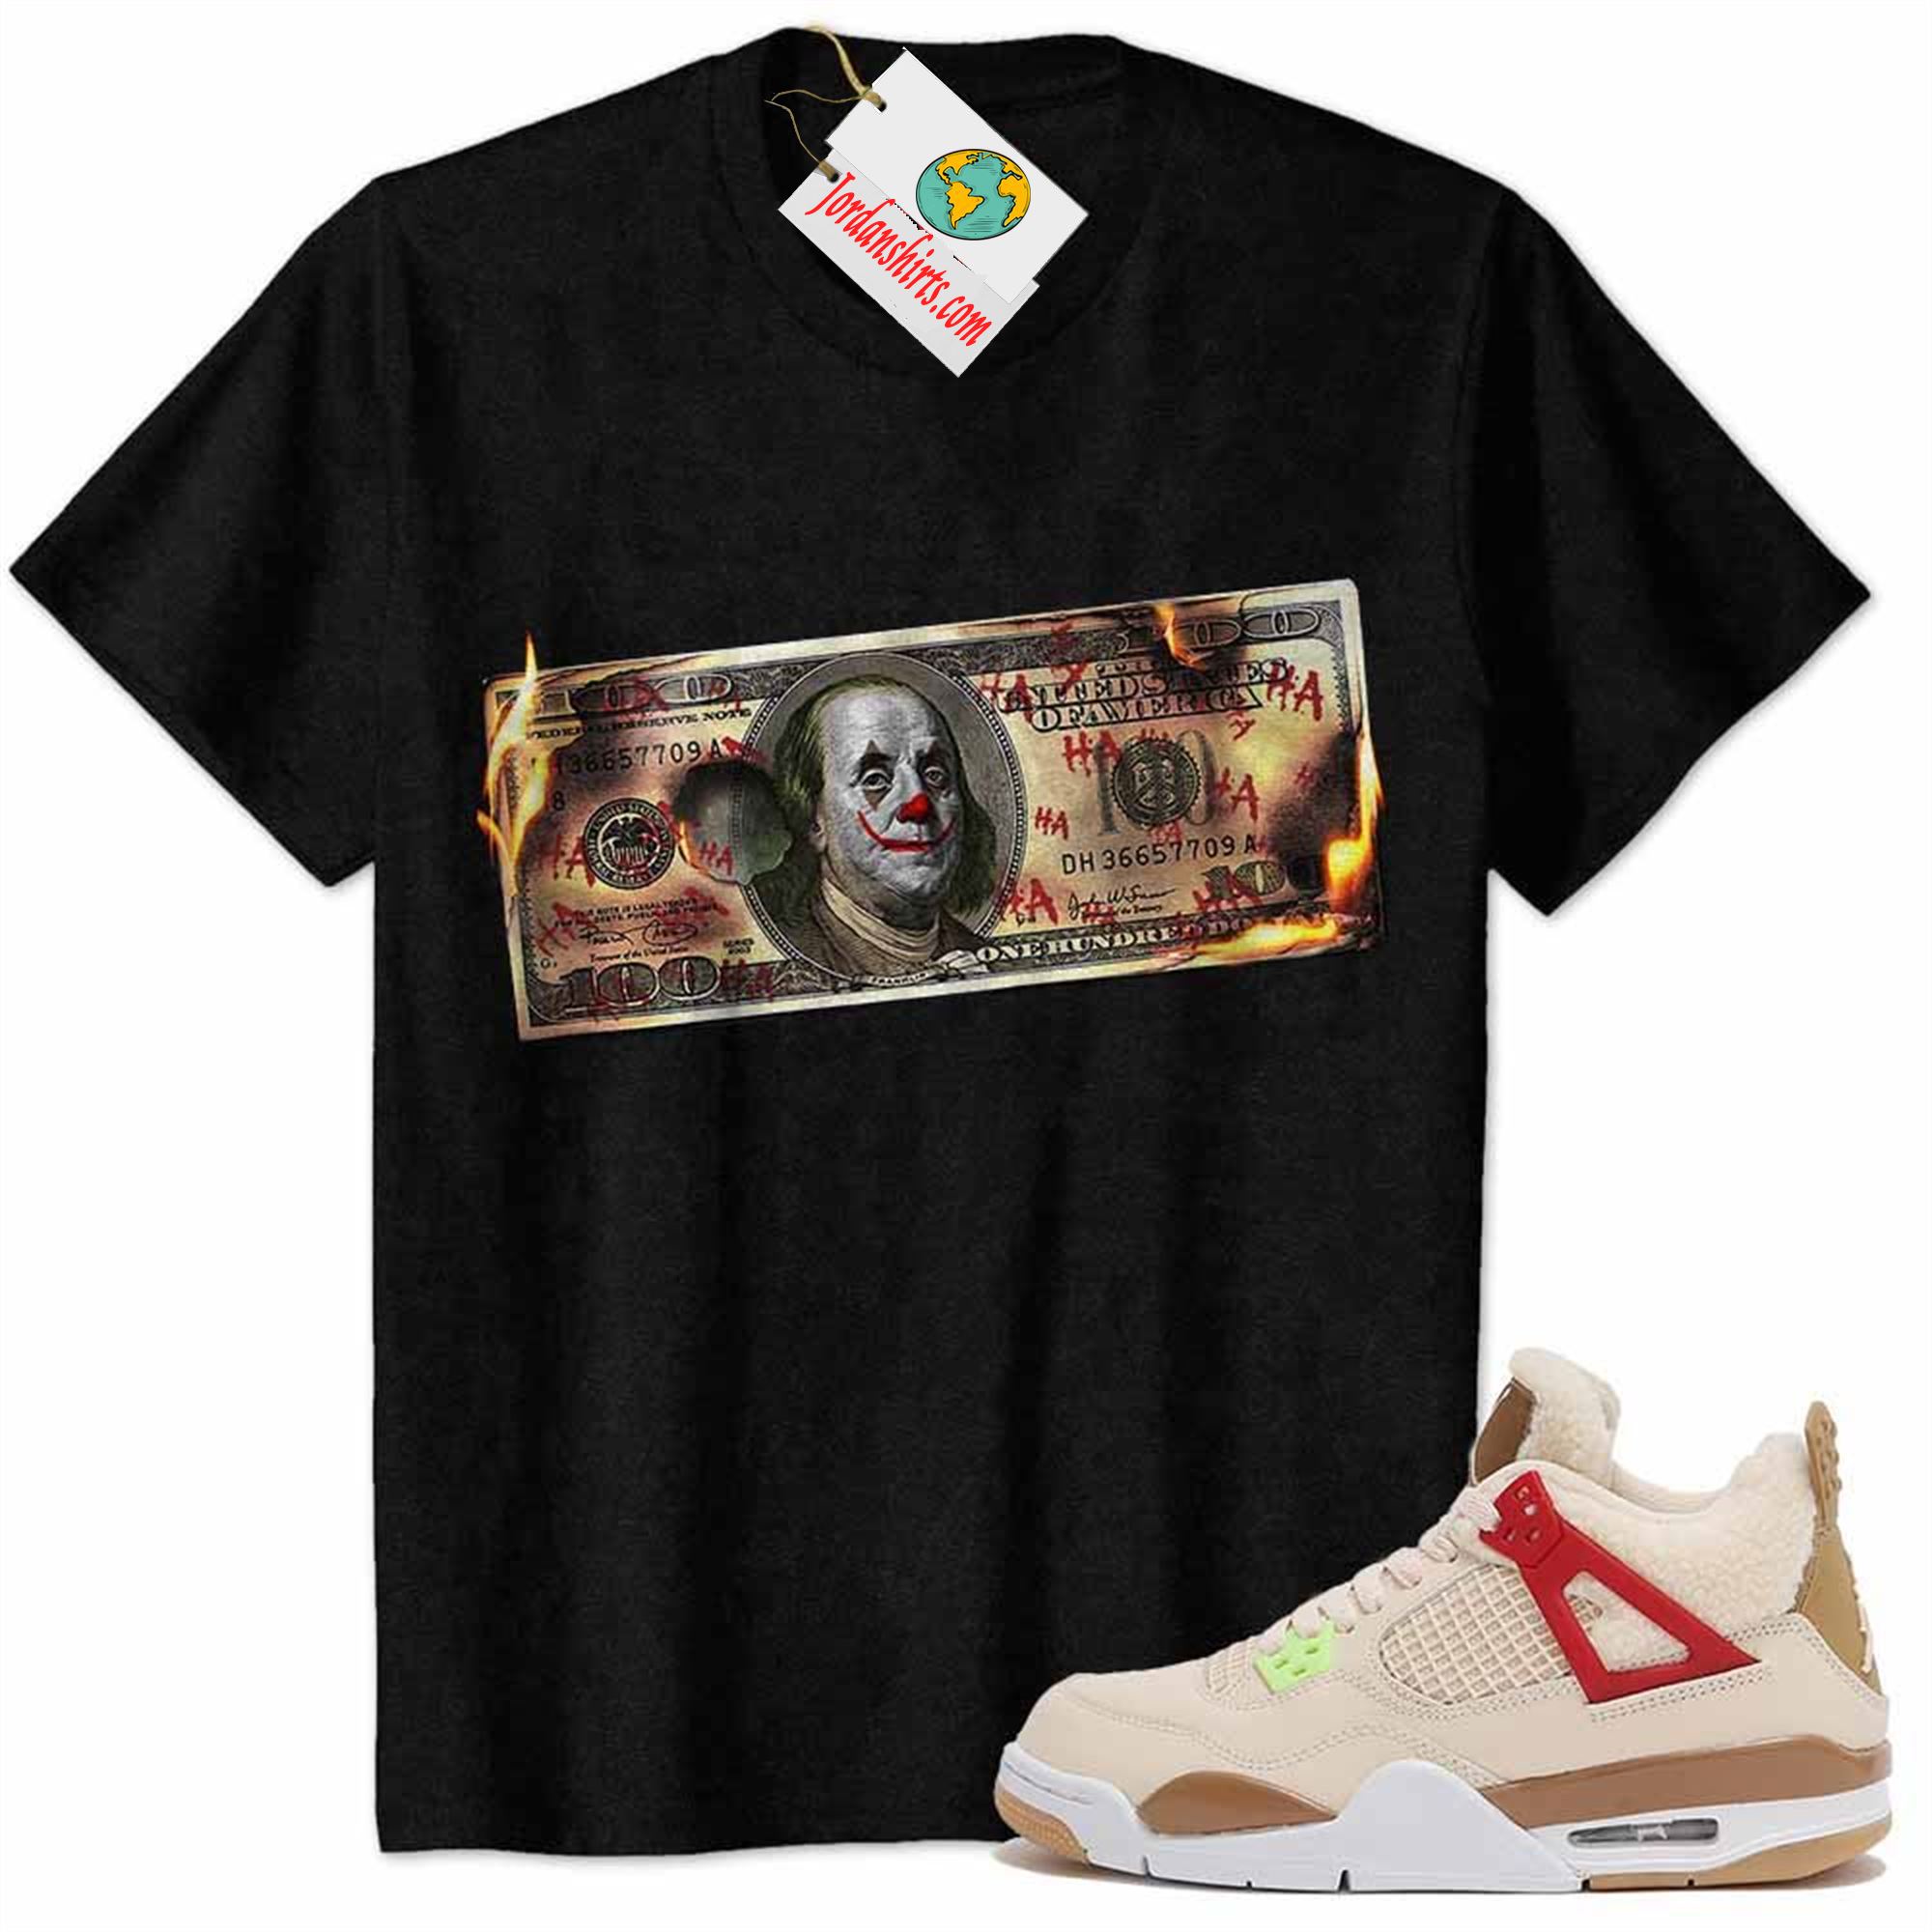 Jordan 4 Shirt, Ben Franklin Joker Dollar Burning Black Air Jordan 4 Wild Things 4s Size Up To 5xl